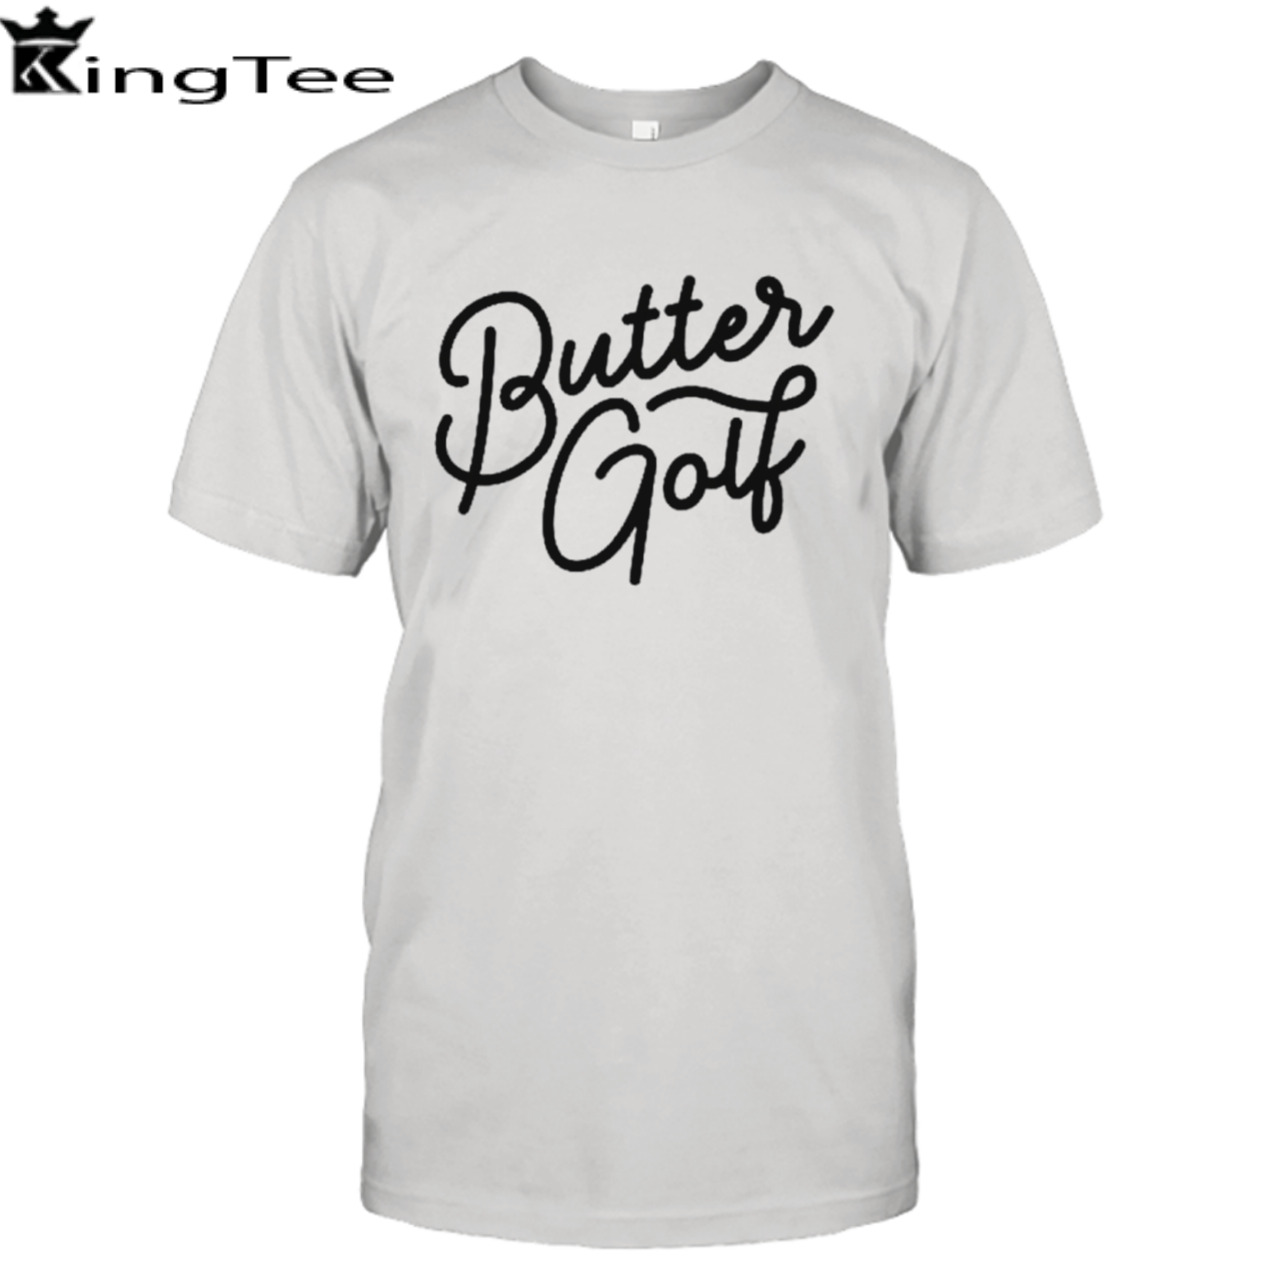 Bucciot butter golf shirt